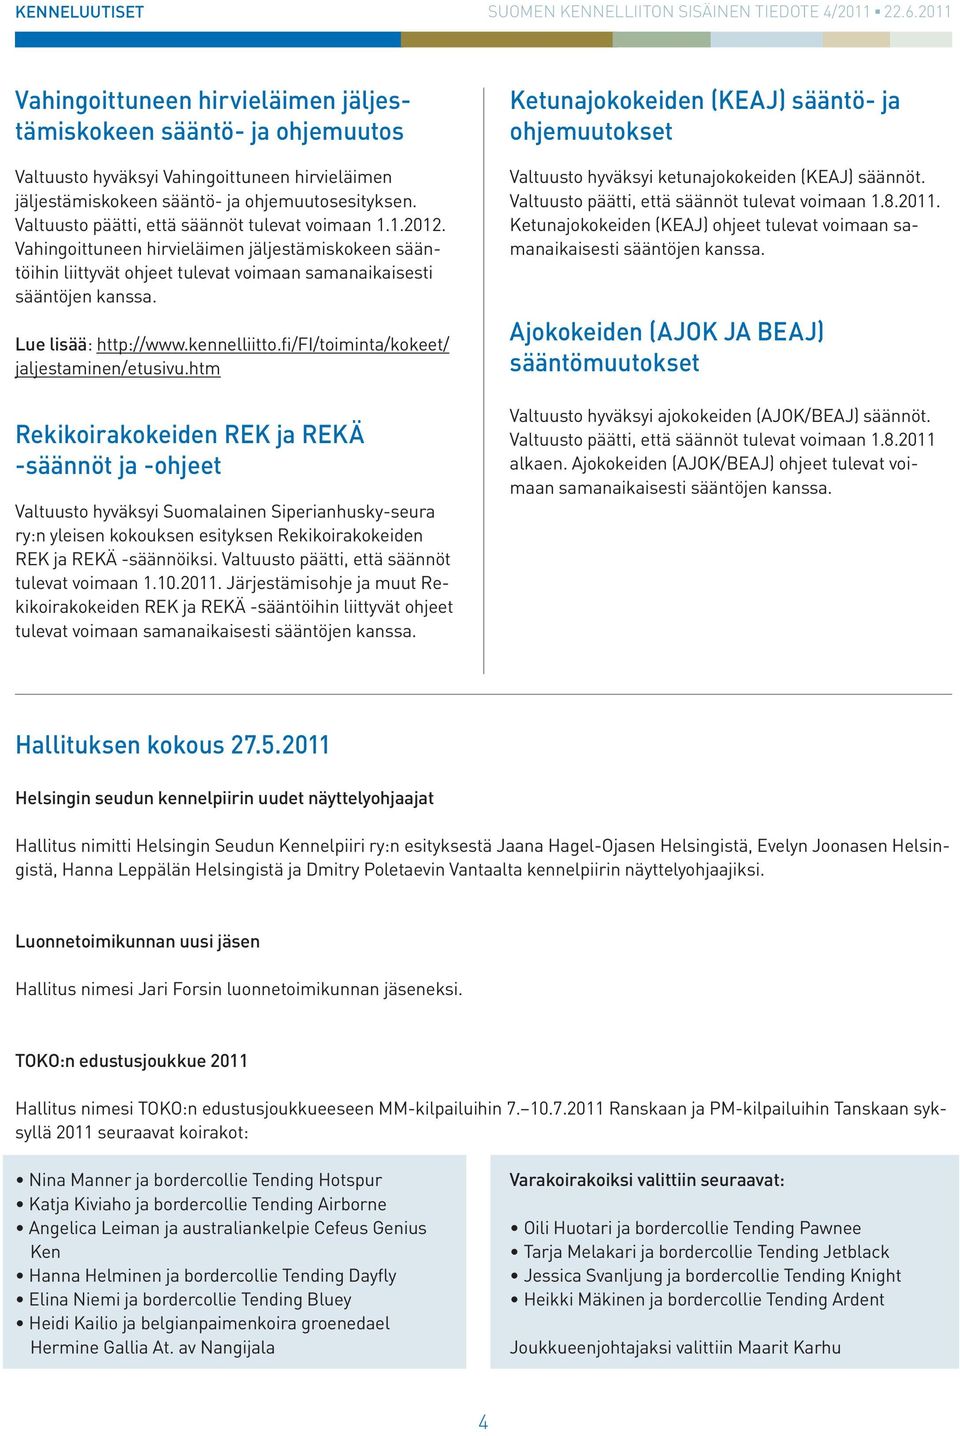 Lue lisää: http://www.kennelliitto.fi/fi/toiminta/kokeet/ jaljestaminen/etusivu.